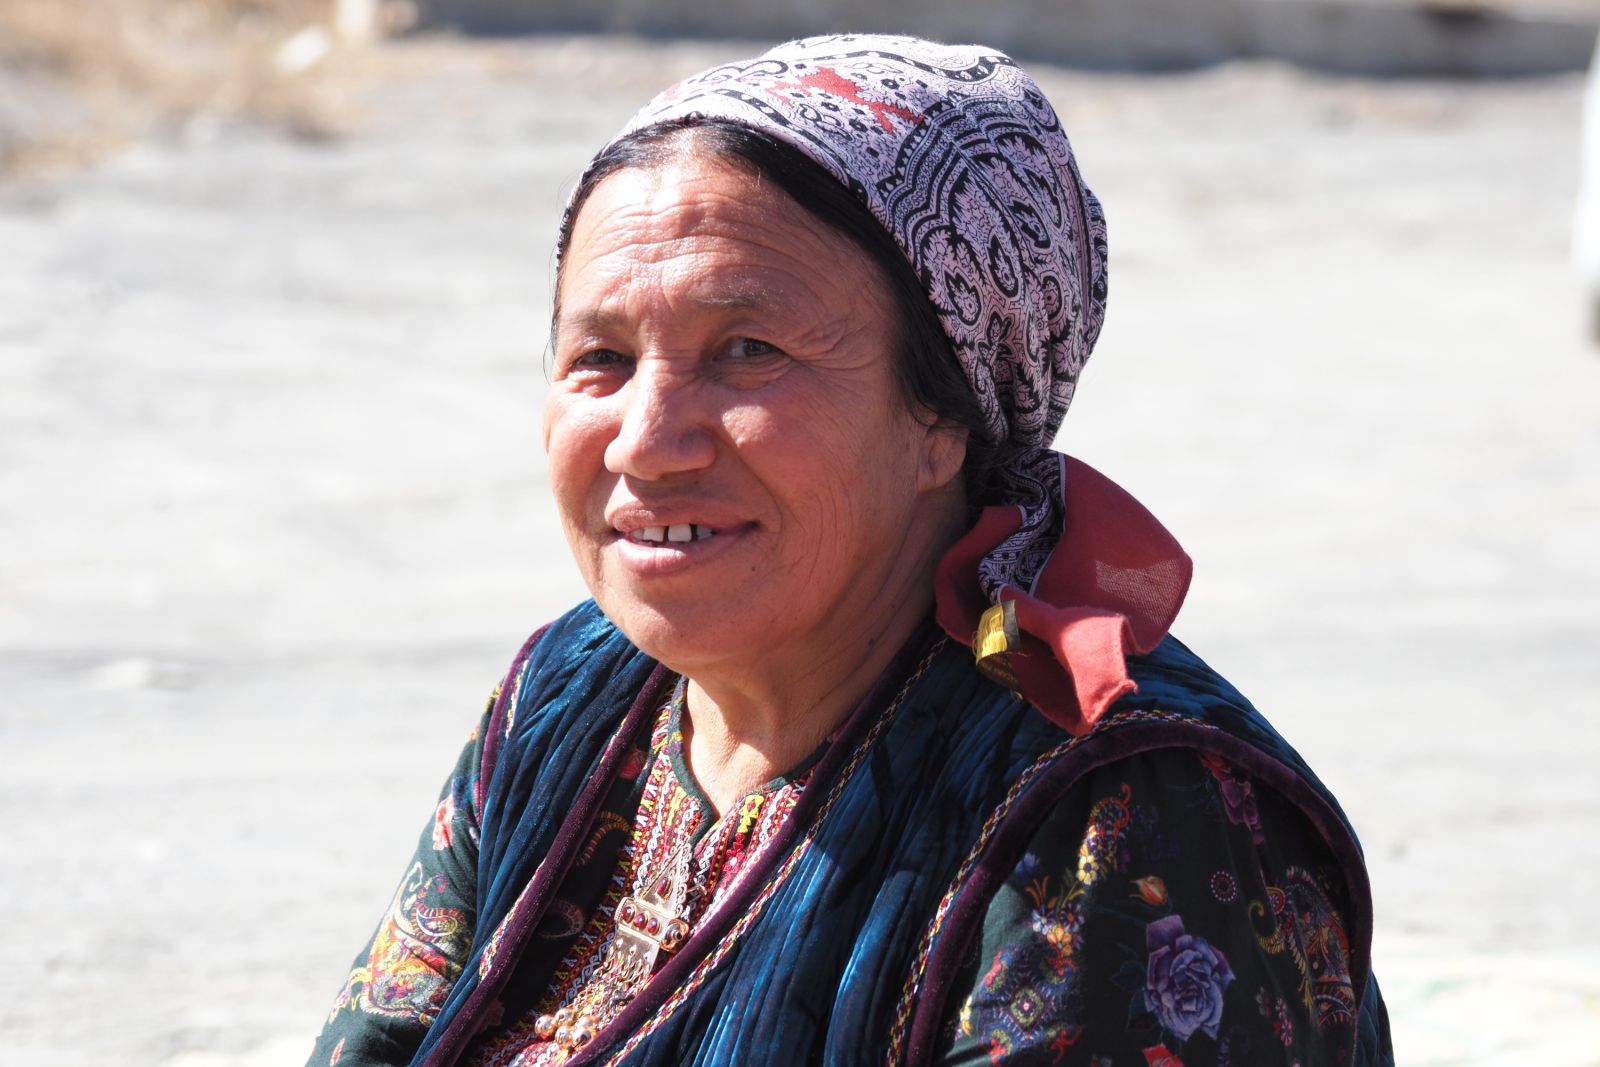 Turkmenin mit traditionellem Kopftuch